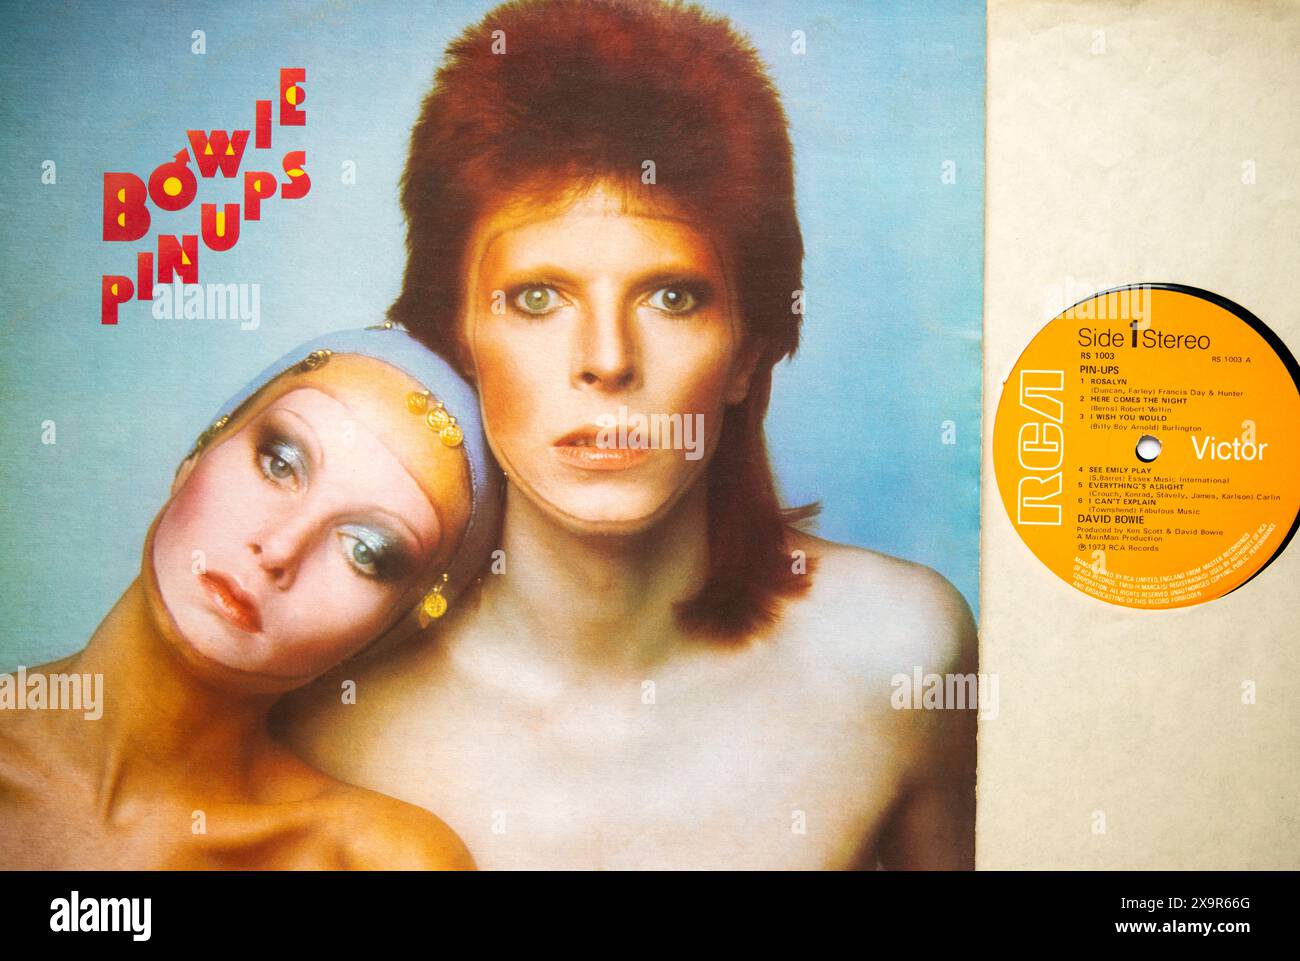 LP couverture et vinyle de PIN UPS, le septième album studio de David Bowie, qui a été sorti en 1973 Banque D'Images